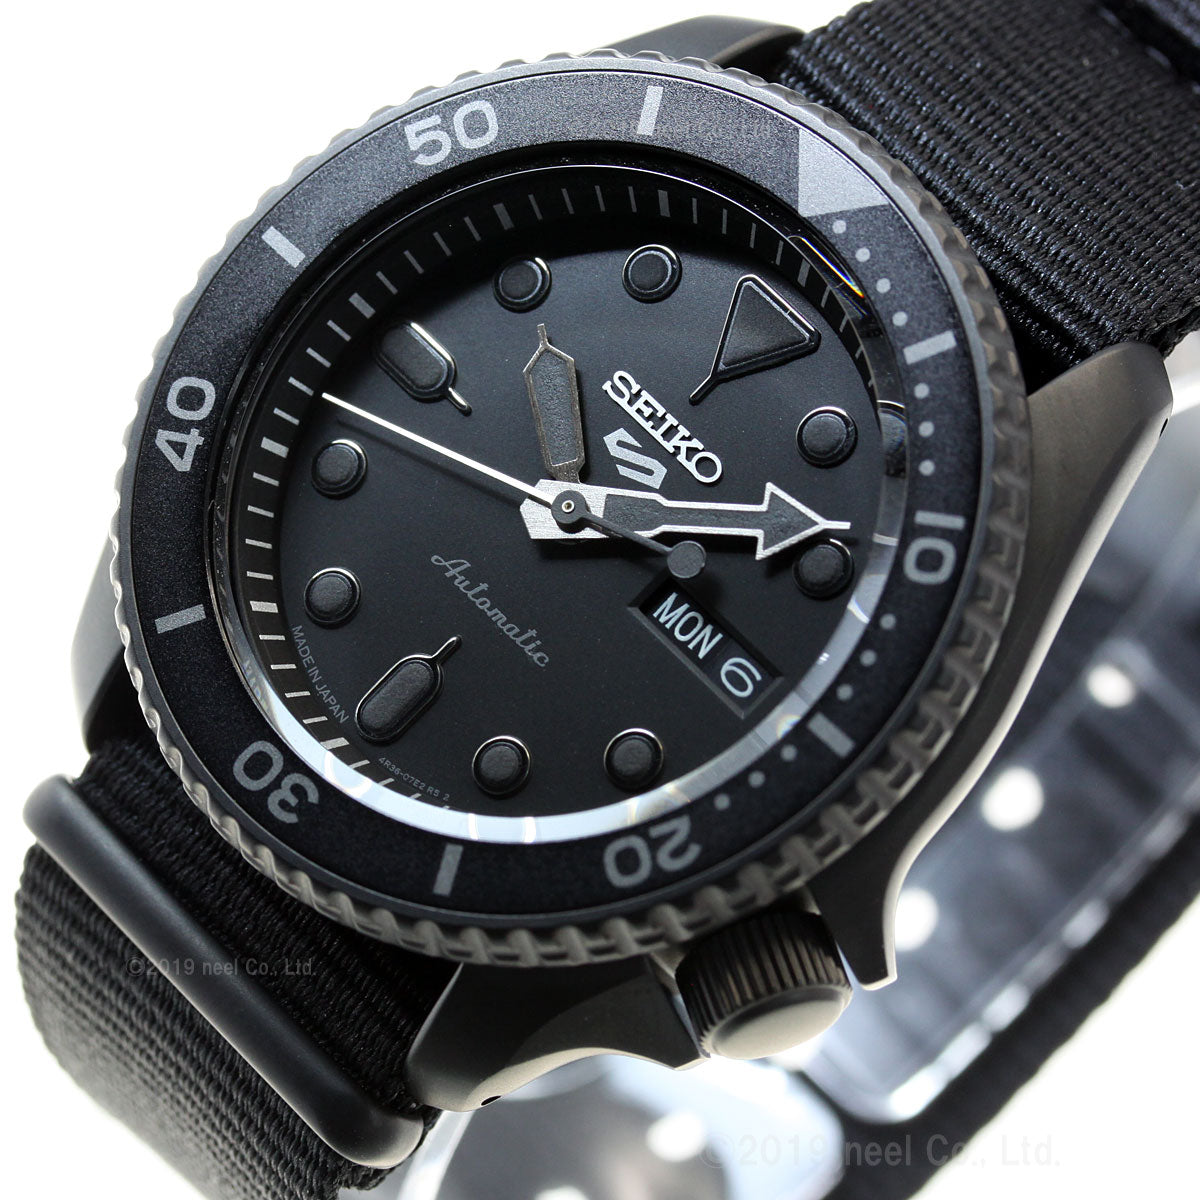 セイコー5 スポーツ SEIKO 5 SPORTS 自動巻き メカニカル 流通限定モデル 腕時計 メンズ セイコーファイブ ストリート Street SBSA025